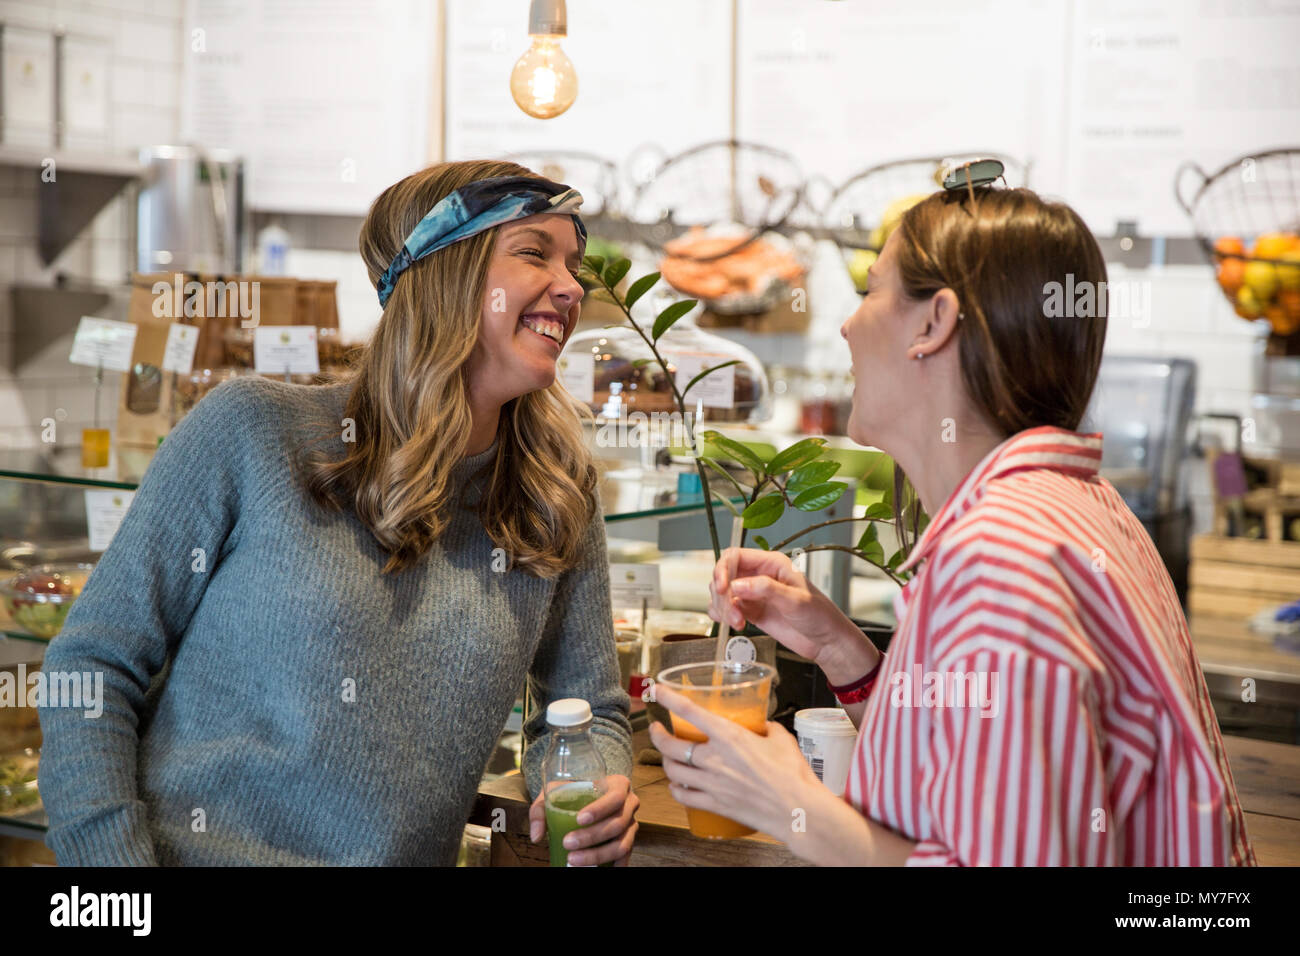 Zwei junge weibliche Freunde zusammen lachen im Cafe Stockfoto